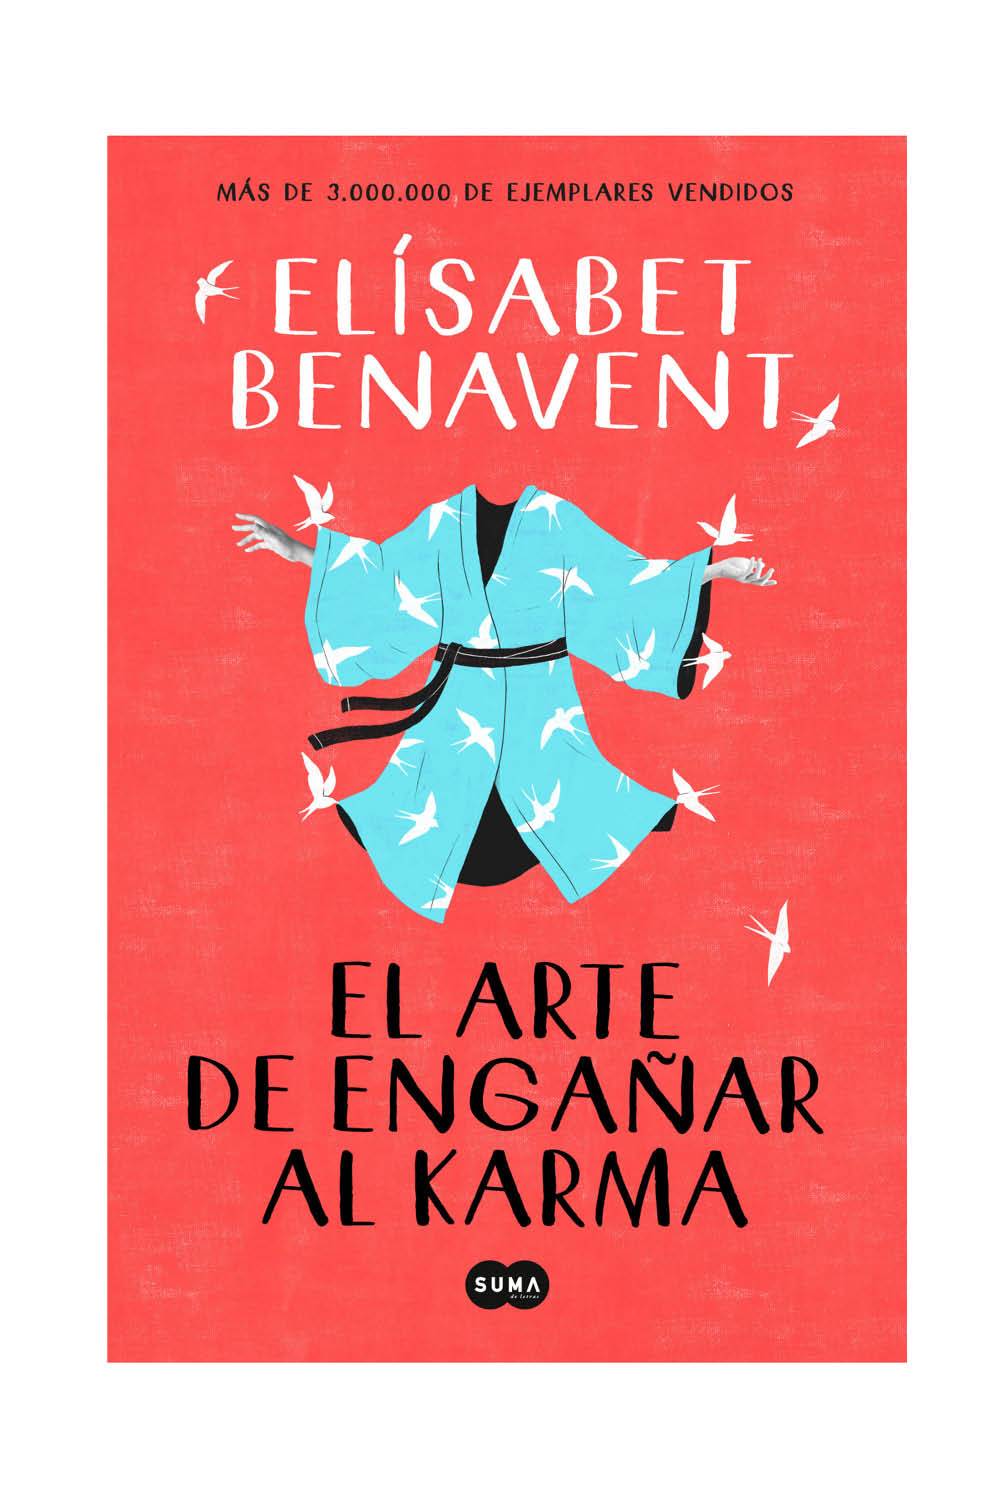 libros recomendados best sellers verano 2021 elisabet benavent el arte de enganar al karma